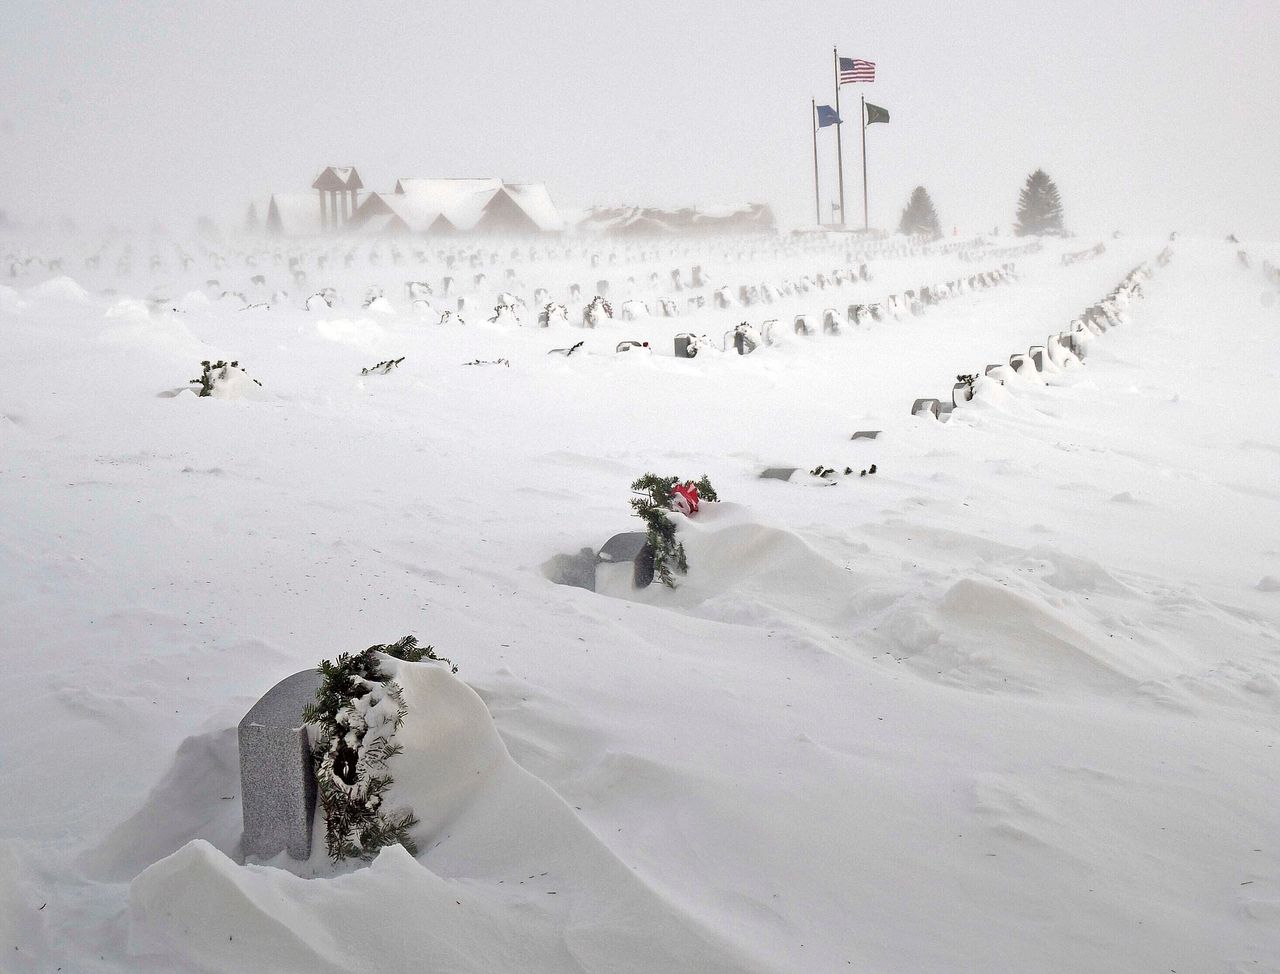 Σειρές από ταφόπλακες στο νεκροταφείο βετεράνων της Βόρειας Ντακότα καλύπτονται από το χιόνι την Πέμπτη.